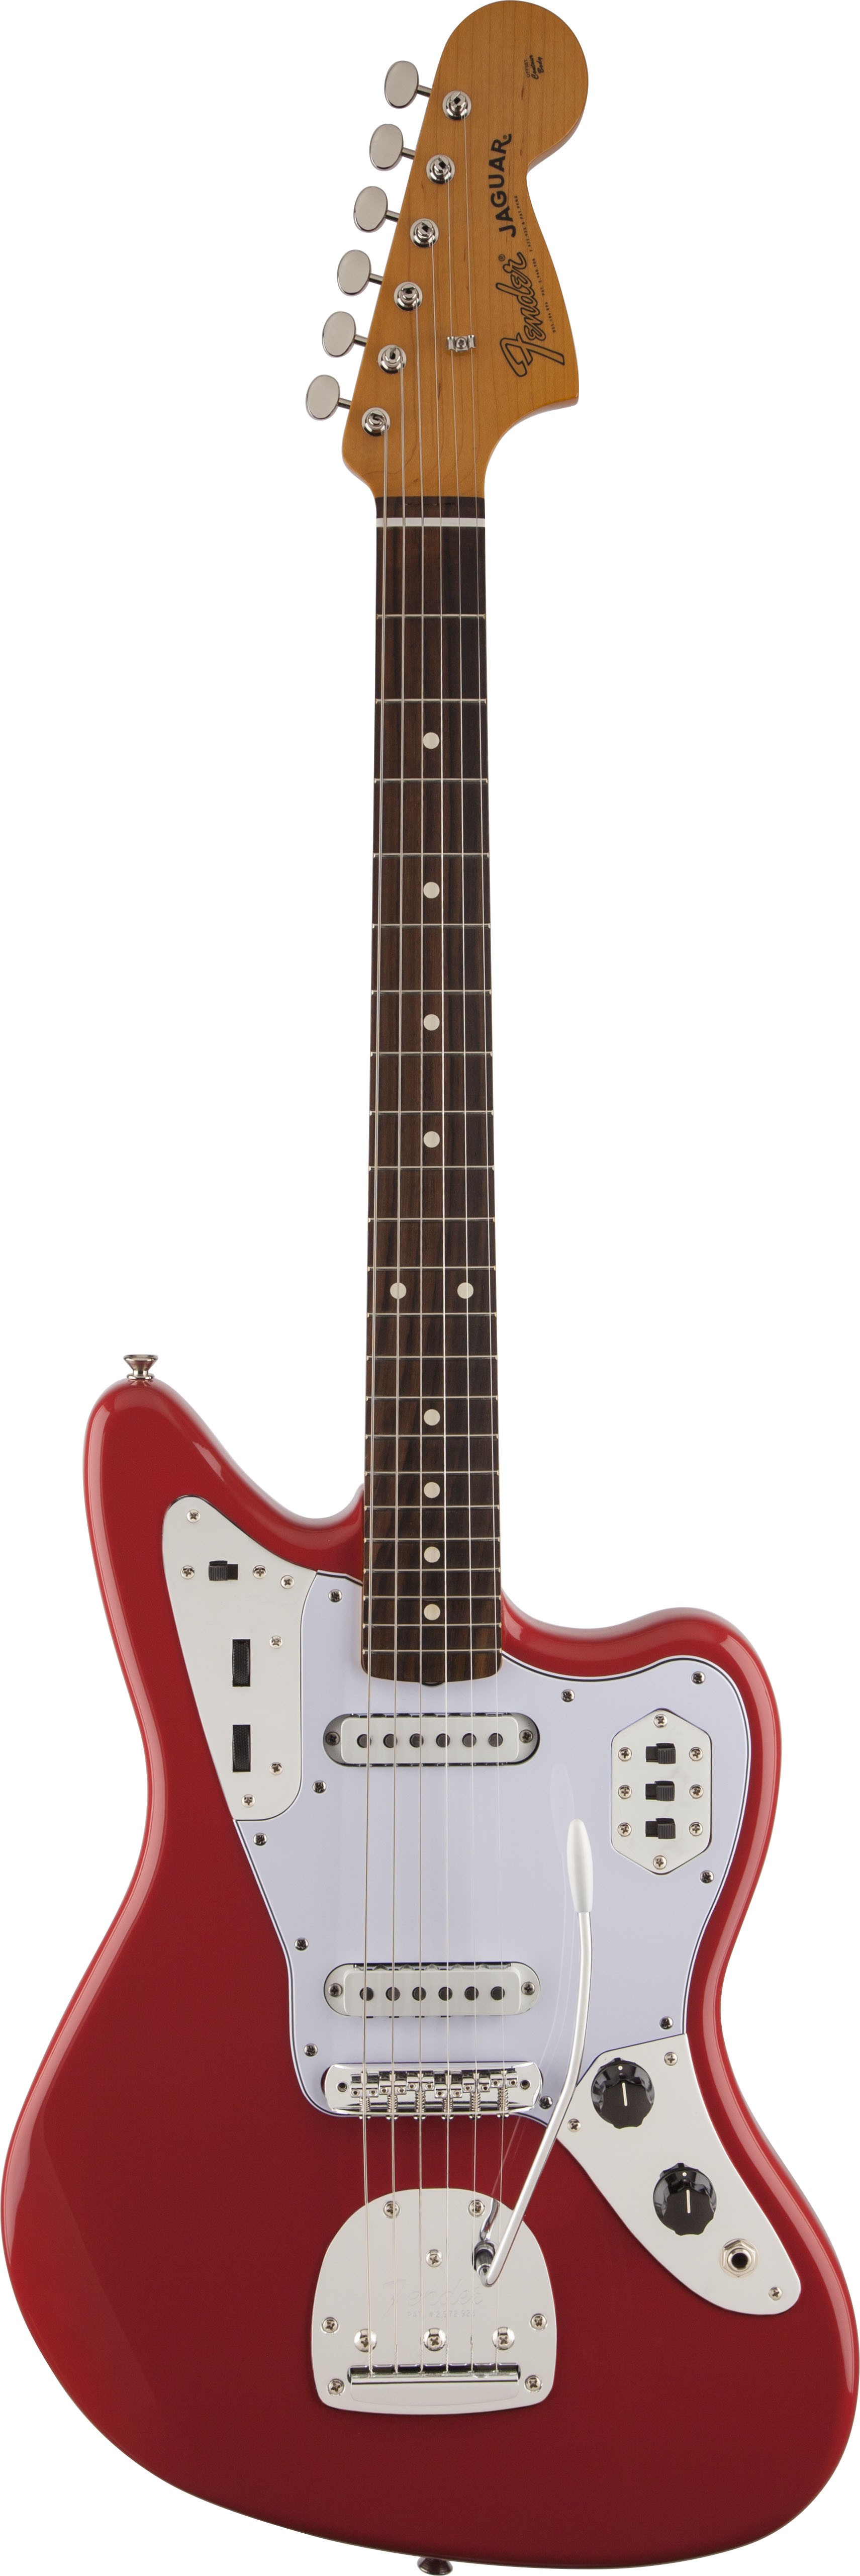 NAMM 2022 New Fender Electric Guitar  Models  Guitar  com 